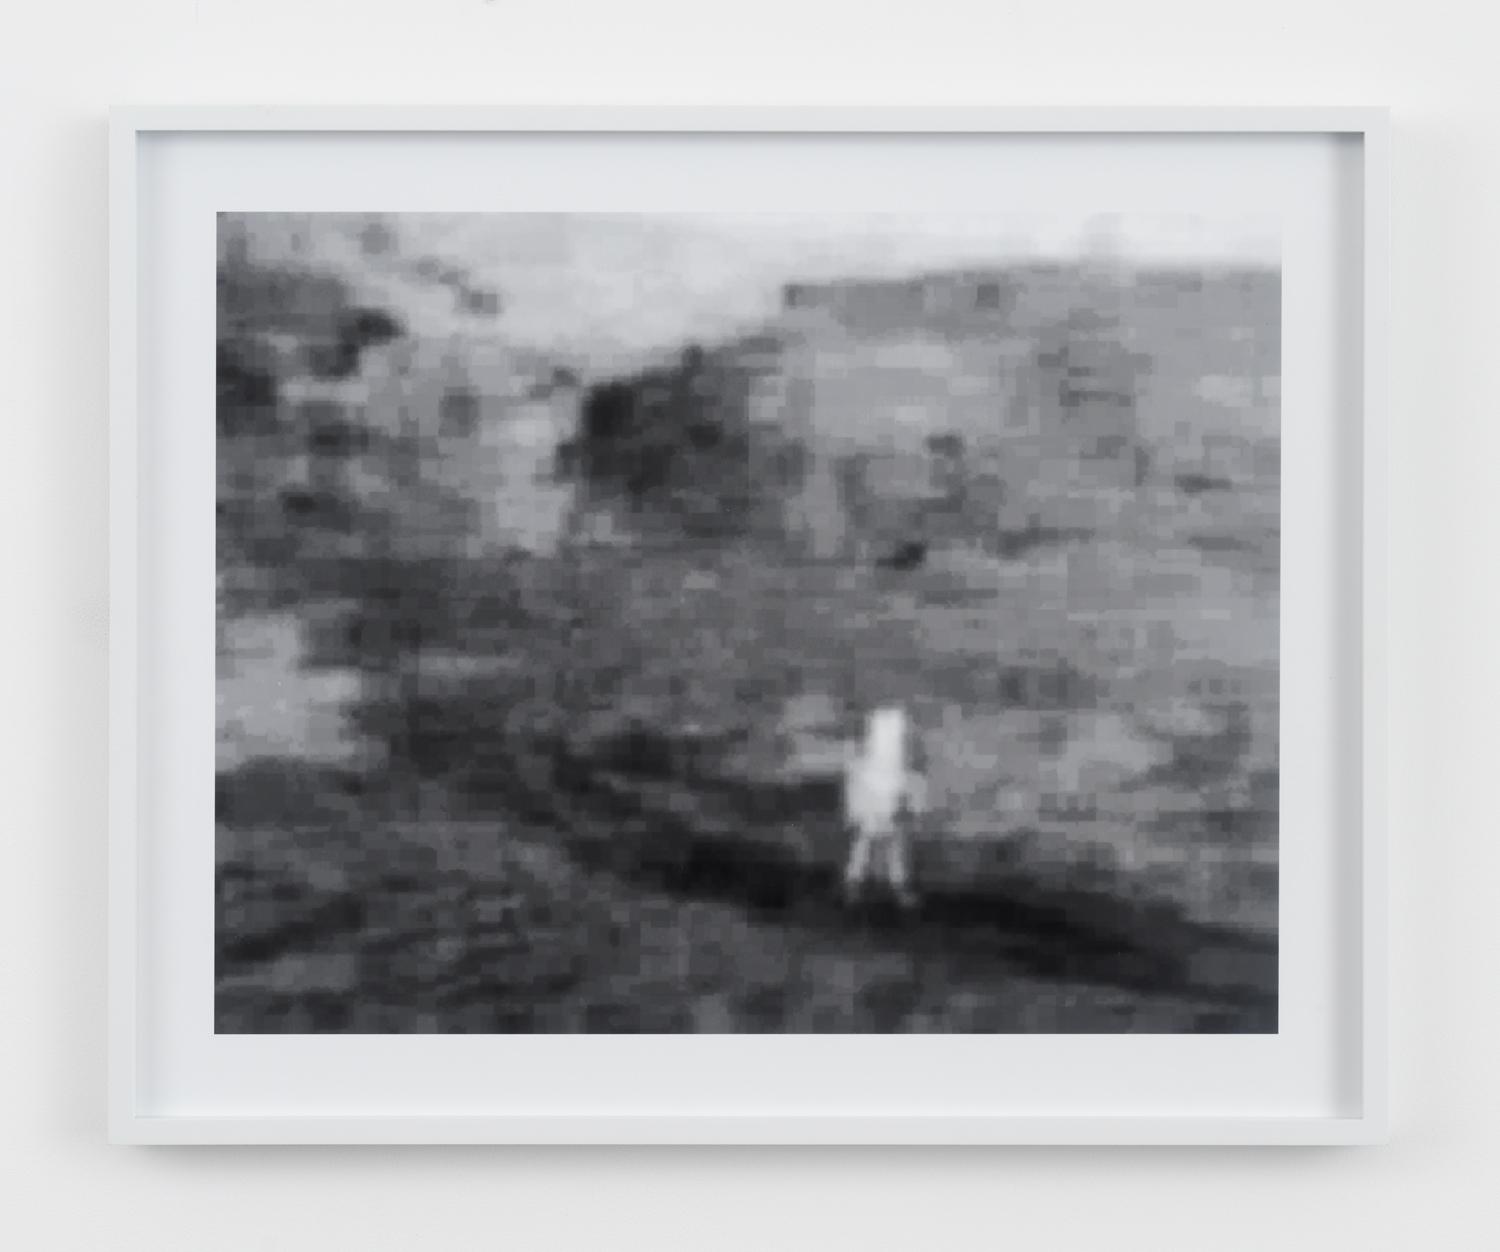 Barbara Ess, Escape (Surveillance Series), 2009, archival pigment print, 20h x 24w in.